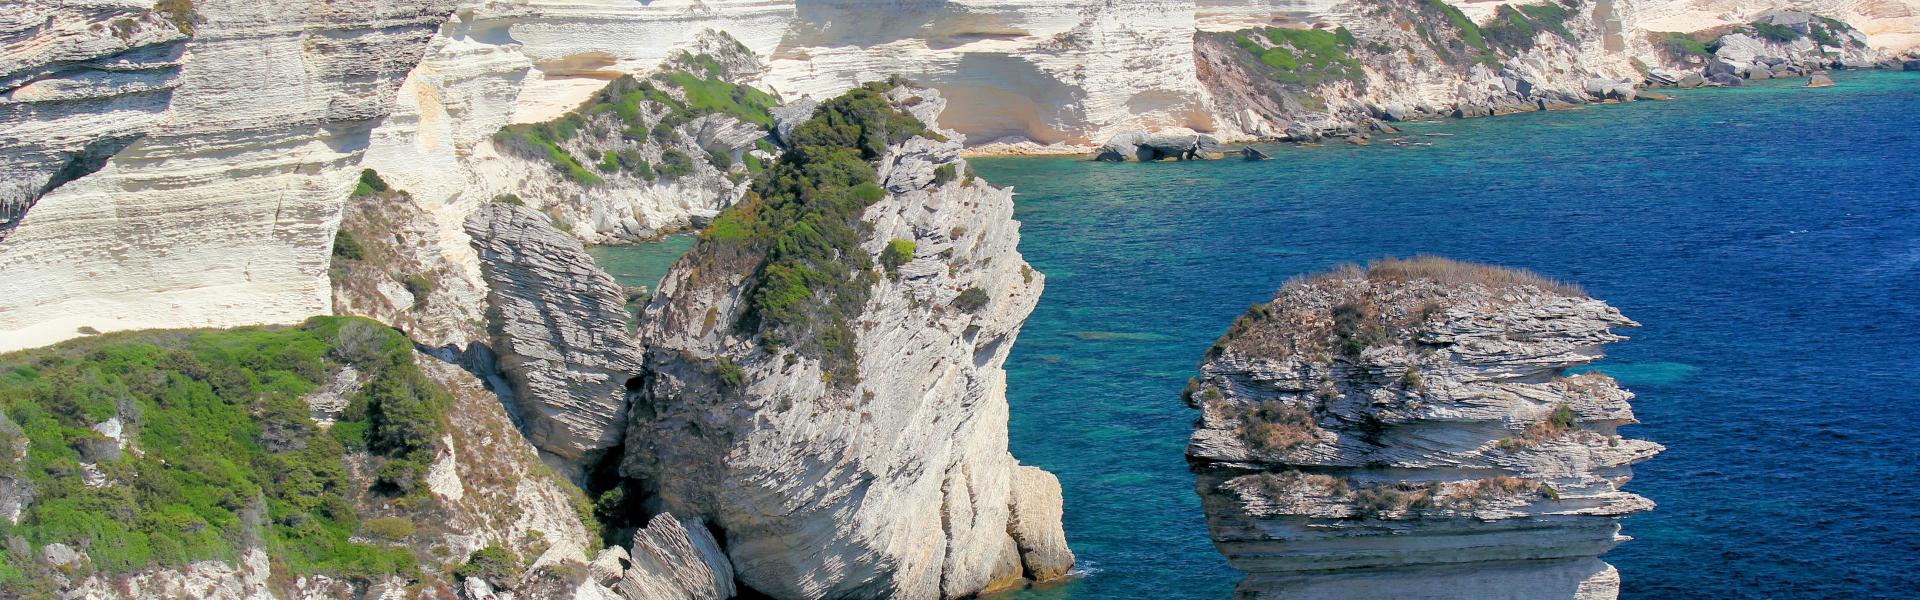 Location de vacances à Calcatoggio - Corse-du-Sud - Amivac